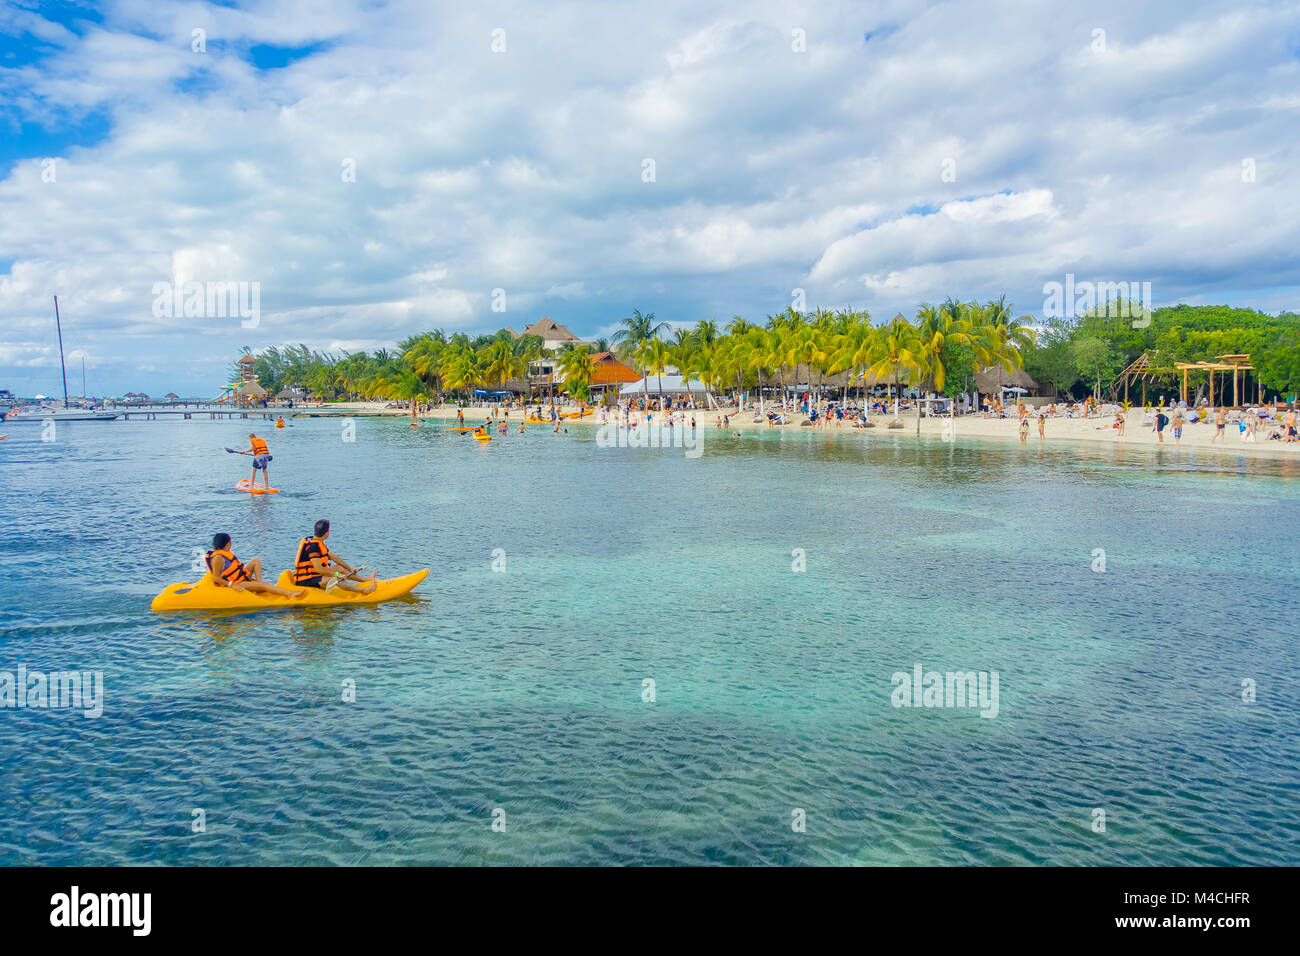 CANCUN, MEXIKO - Januar 10, 2018: Nicht identifizierte Personen Paddeln in ihre Kayack in einem wunderschönen karibischen Strand Isla Mujeres mit sauberen und transparenten Wasser in Mexiko, Sonne und Palmen. Tourismus Konzept Stockfoto